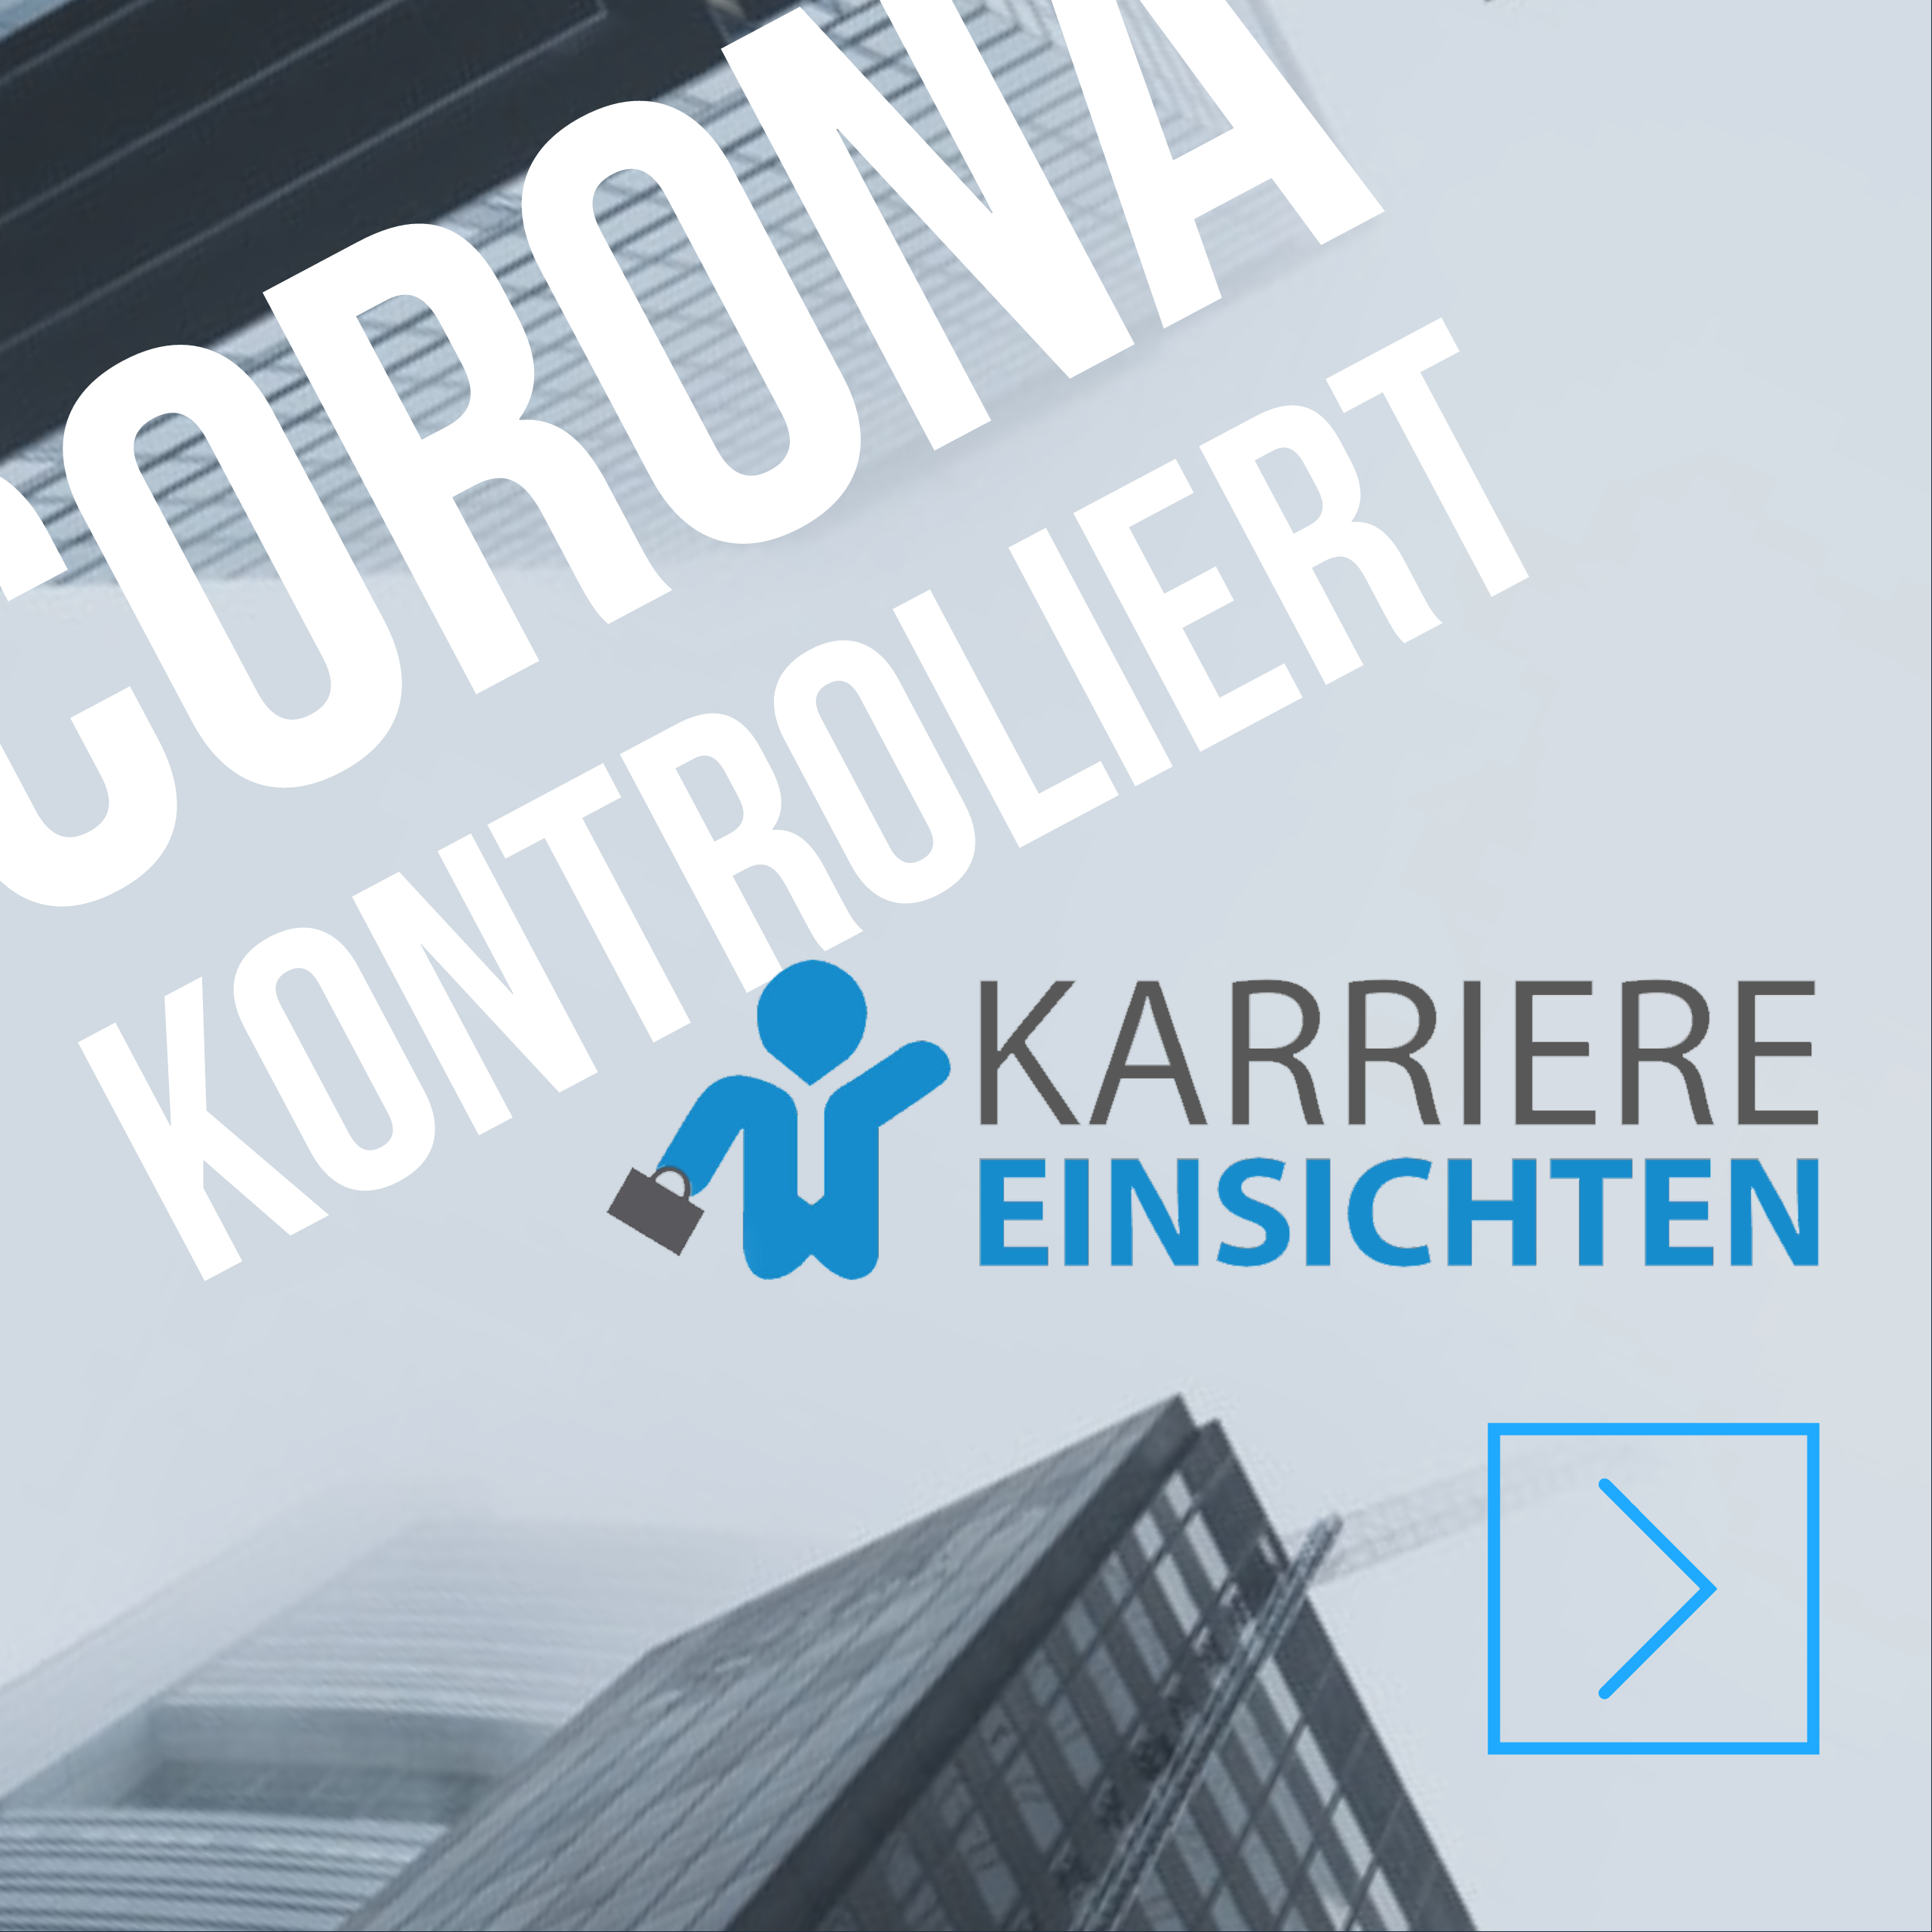 Corona-Management: Weg vom Kontrollzwang, hin zum neuen WIR-Gefühl in der Company…